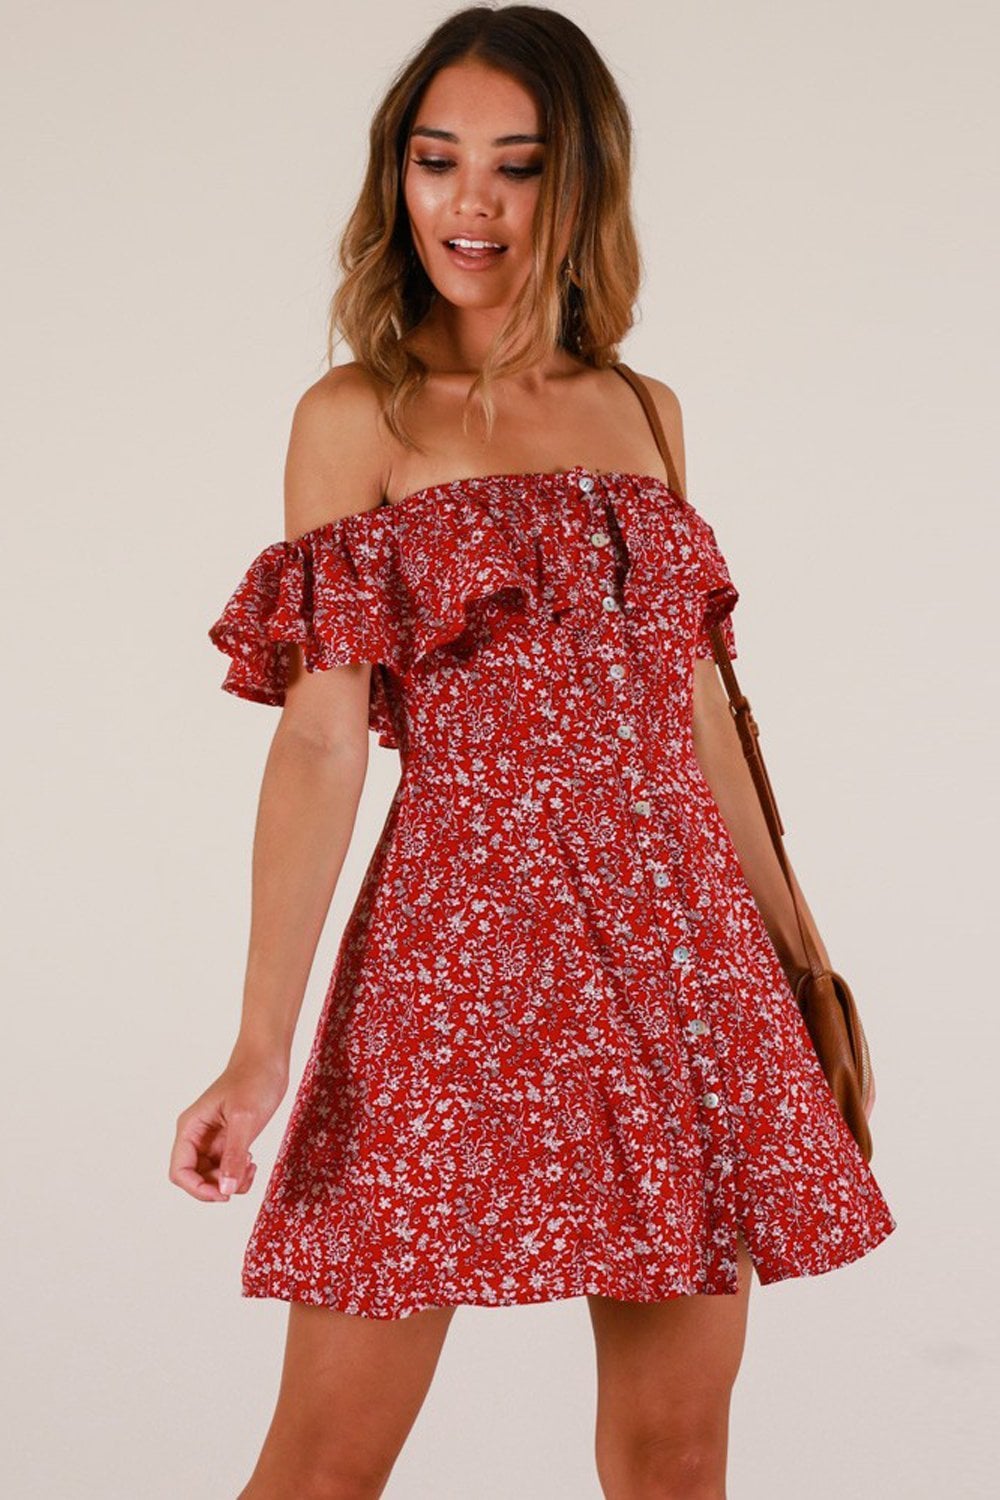 Best Off-the-Shoulder Dresses on Amazon | POPSUGAR